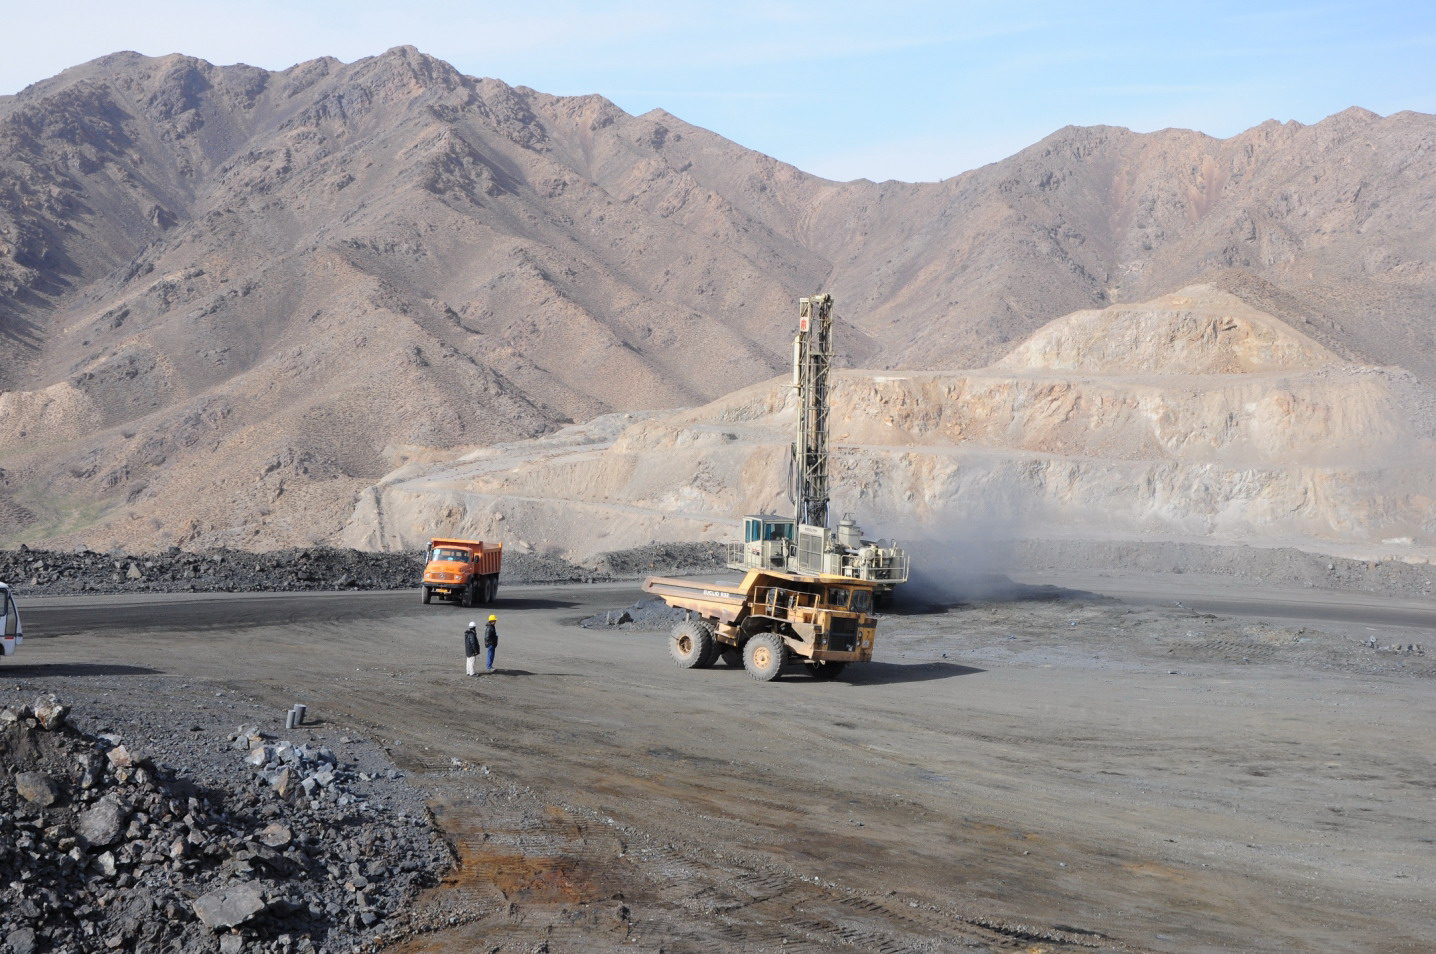 ۱۳ آنومالی جدید در "سنگان" تحت فعالیت های اکتشافی قرار می گیرد/ ذخایر سنگ آهن سنگان ۲۰۰ تا ۵۰۰ میلیون تن افزایش می یابد/ عمق ذخایر سنگ آهن سنگان به ۱۲۰۰ متر می رسد